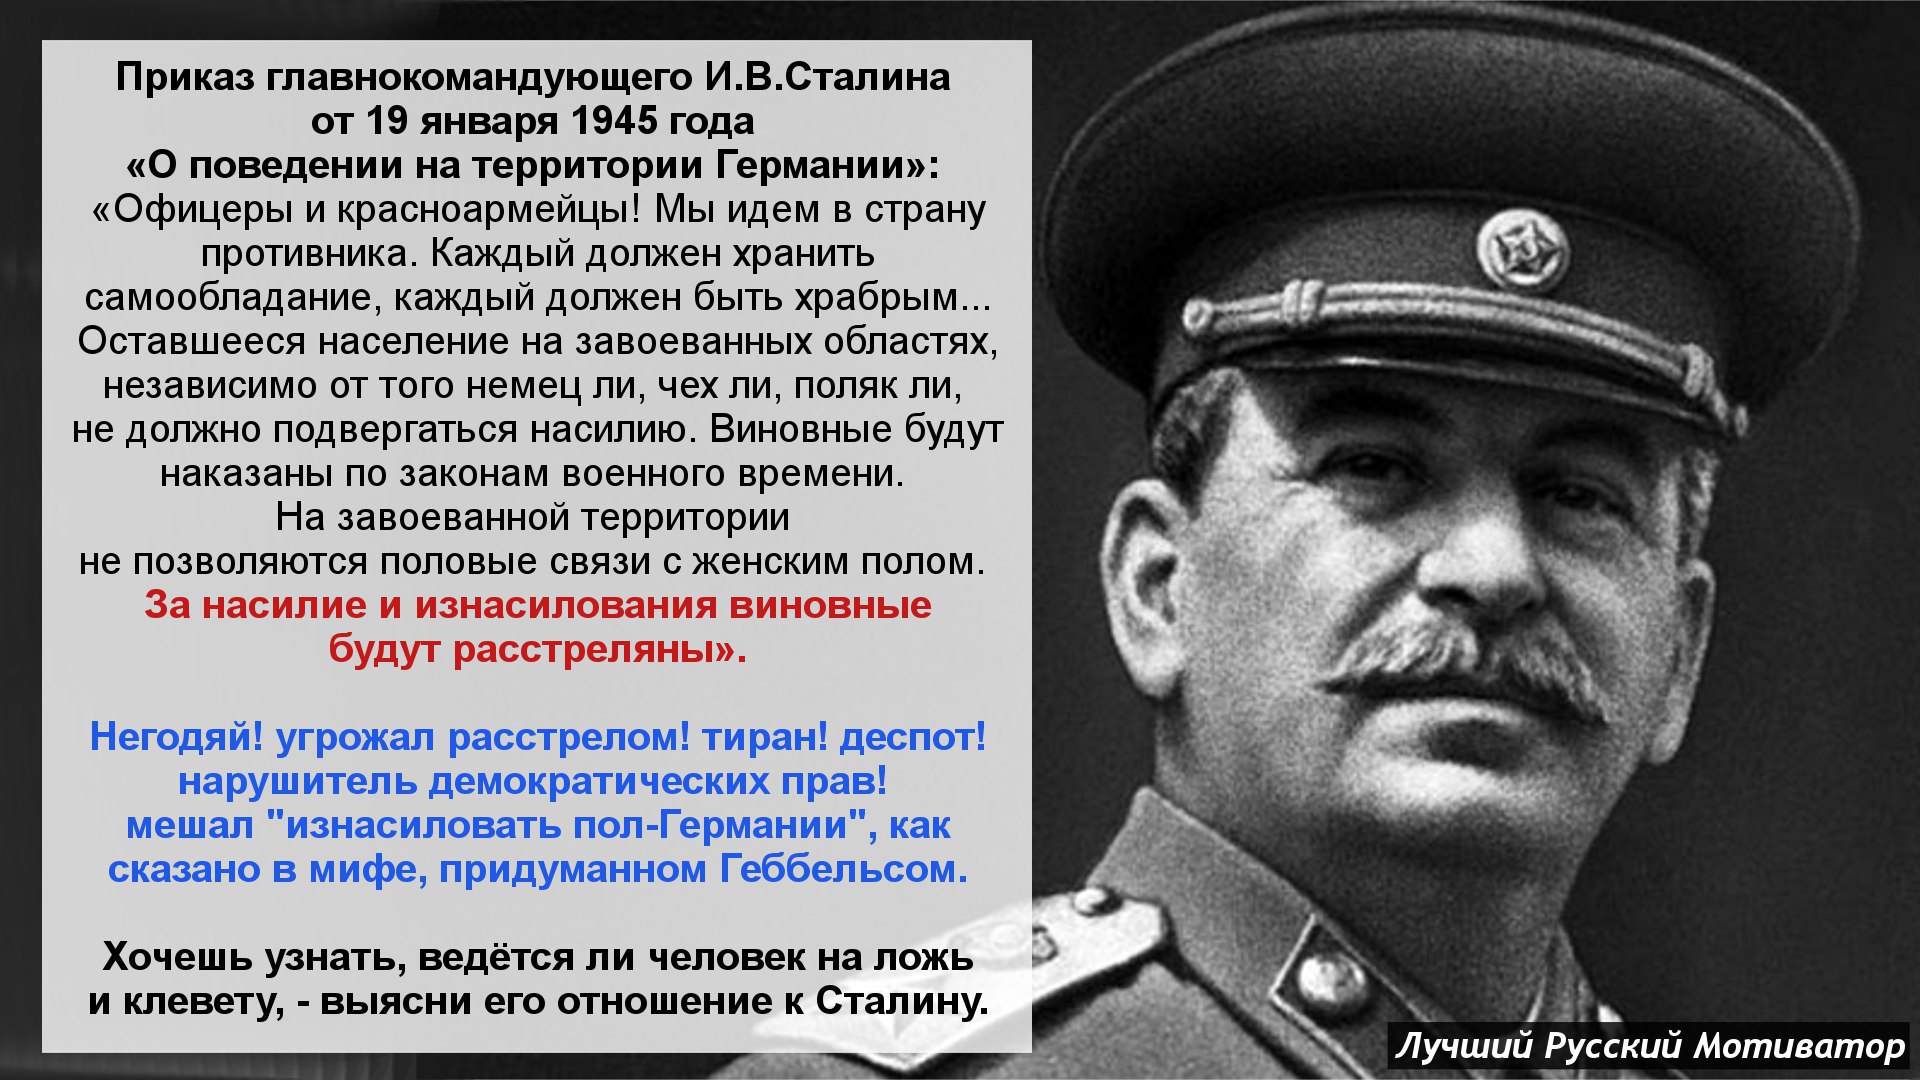 Правда 2 мировой войны. Высказывания о Сталине. Высказывания Сталина. Фразы Сталина. Цитаты Сталина.